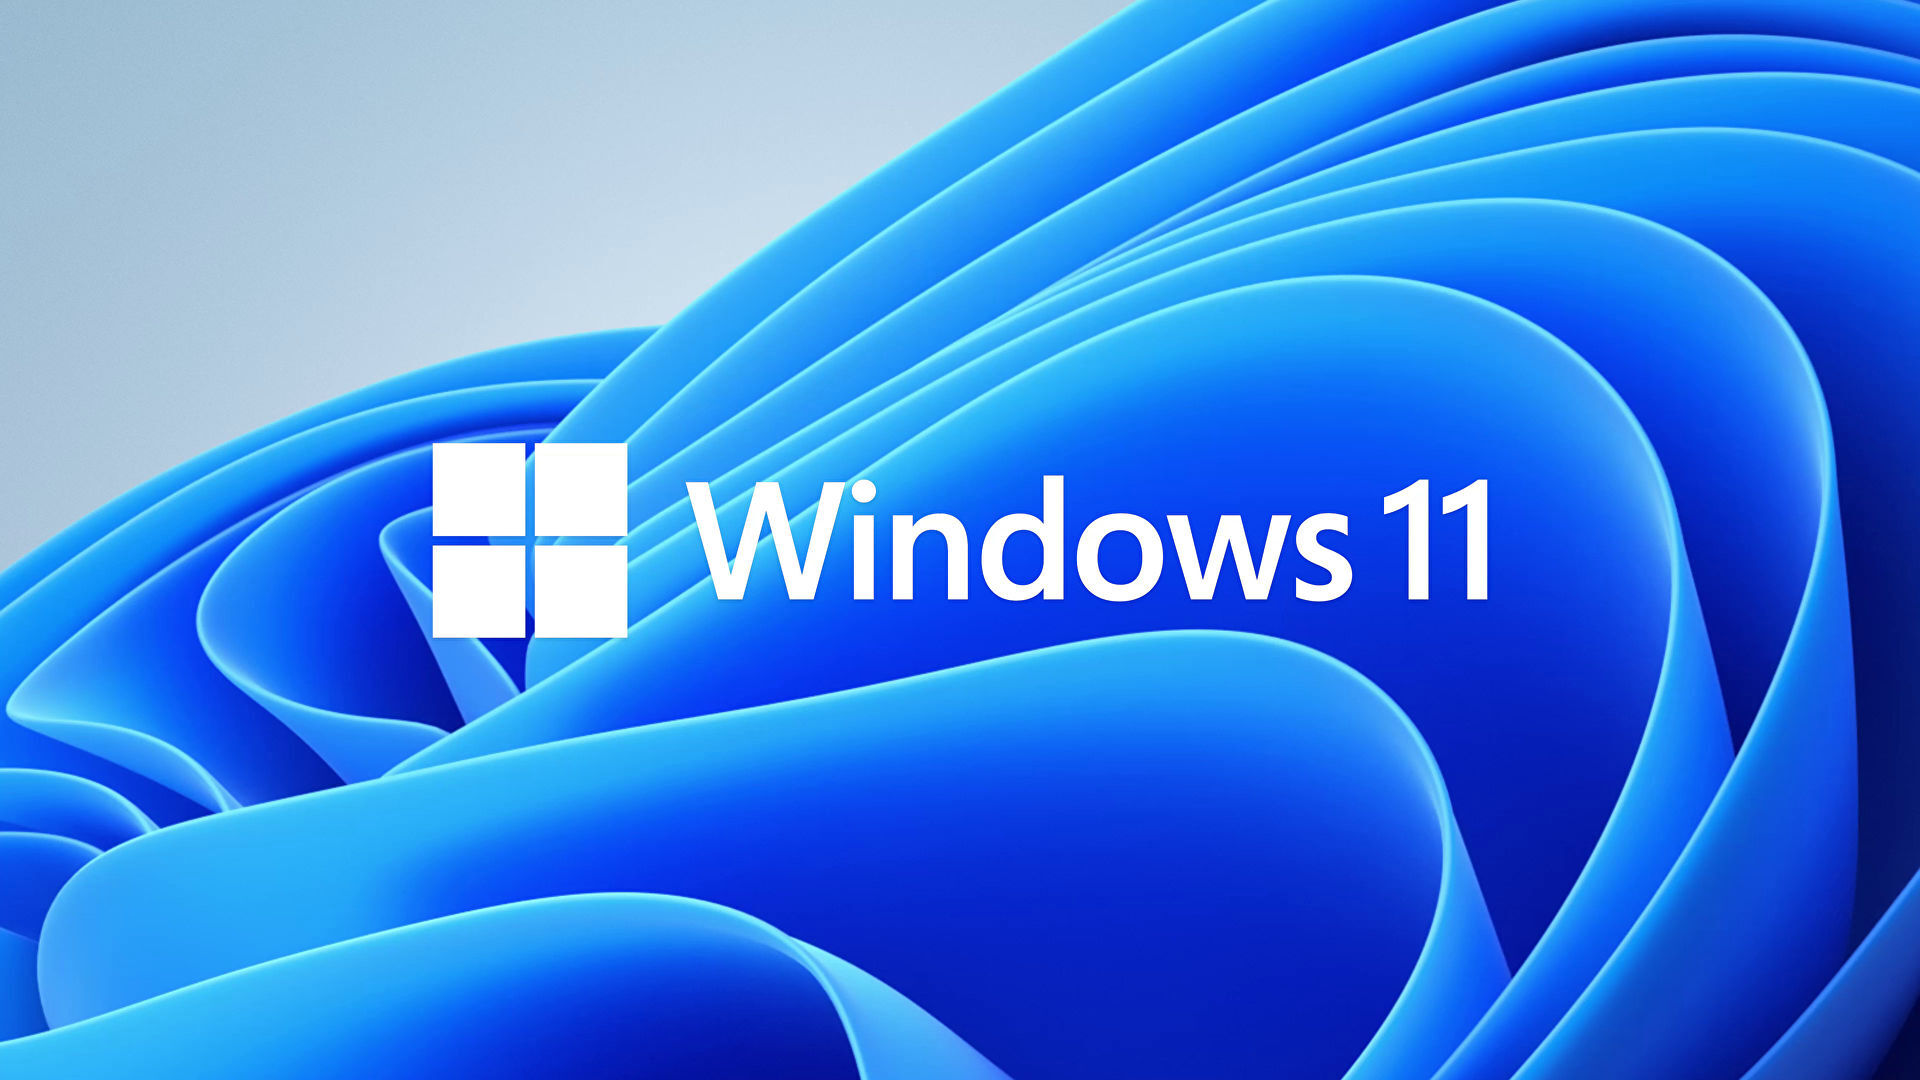  Windows 11  .  